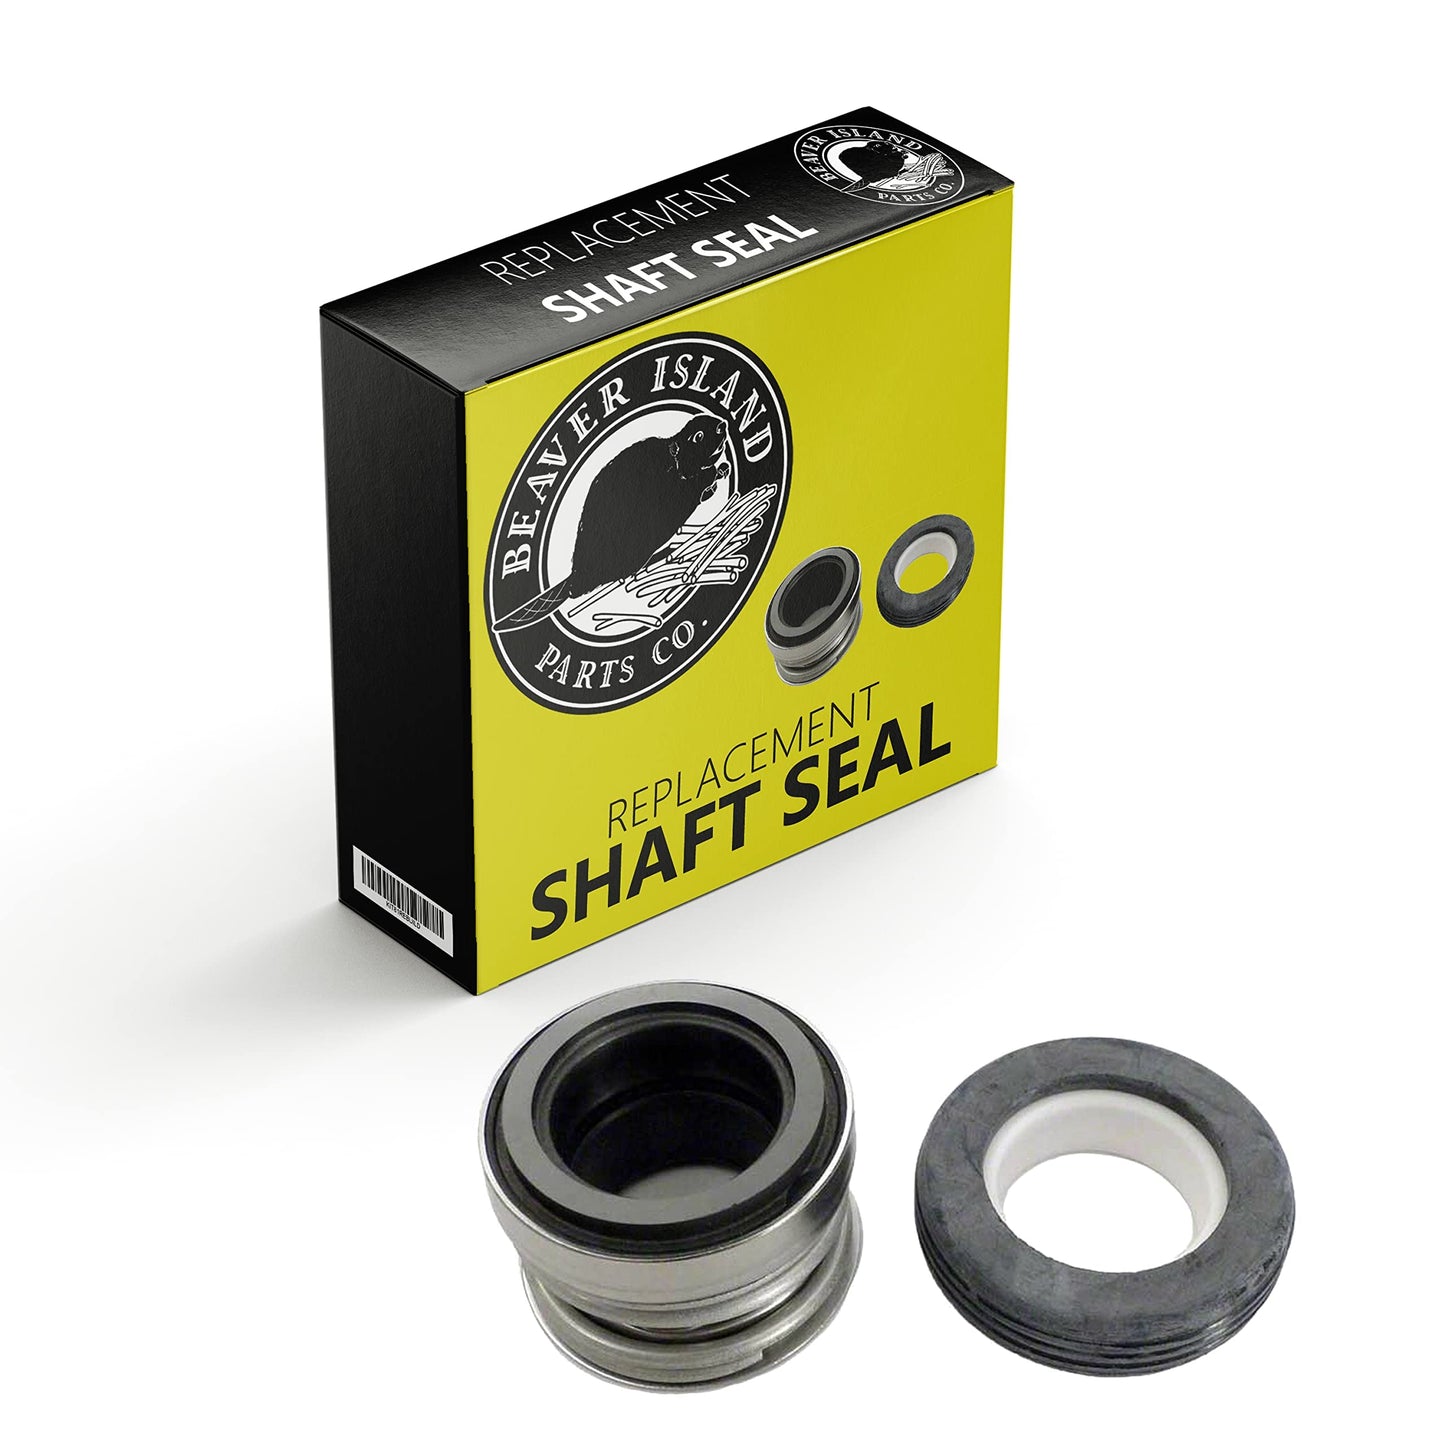 Shaft Seal Replacement for ITT Marlow Mardur Series 38592-00 Pump Motor Mechanical Seal